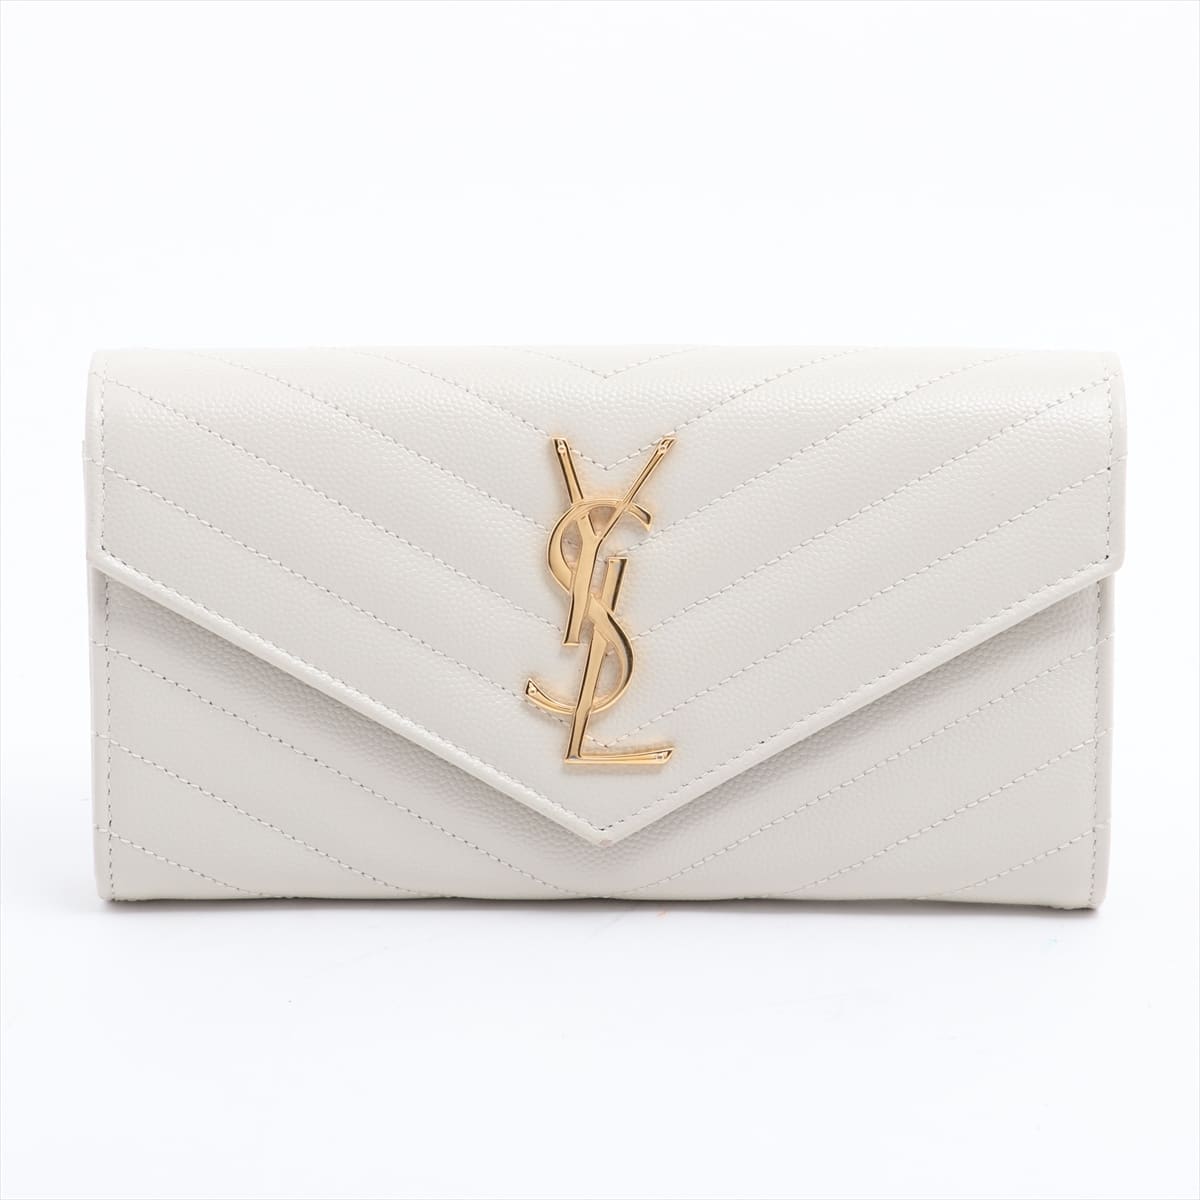 Saint Laurent Paris V Stitch Leather Wallet White 372264.1018